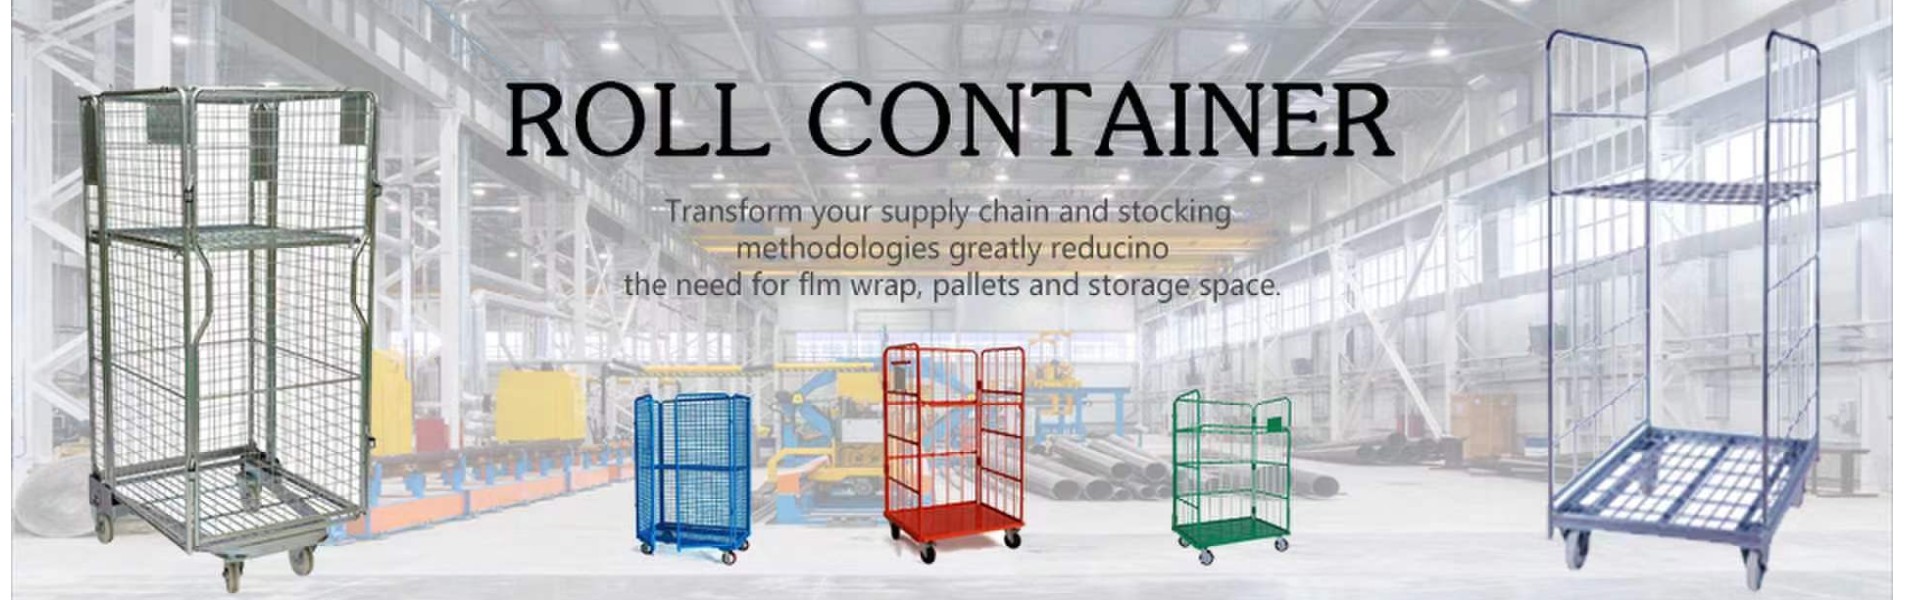 Контейнер с рулоном, проволочный контейнер, поддон клетки,Qingdao Rewell Logistics Equipment Co., Ltd